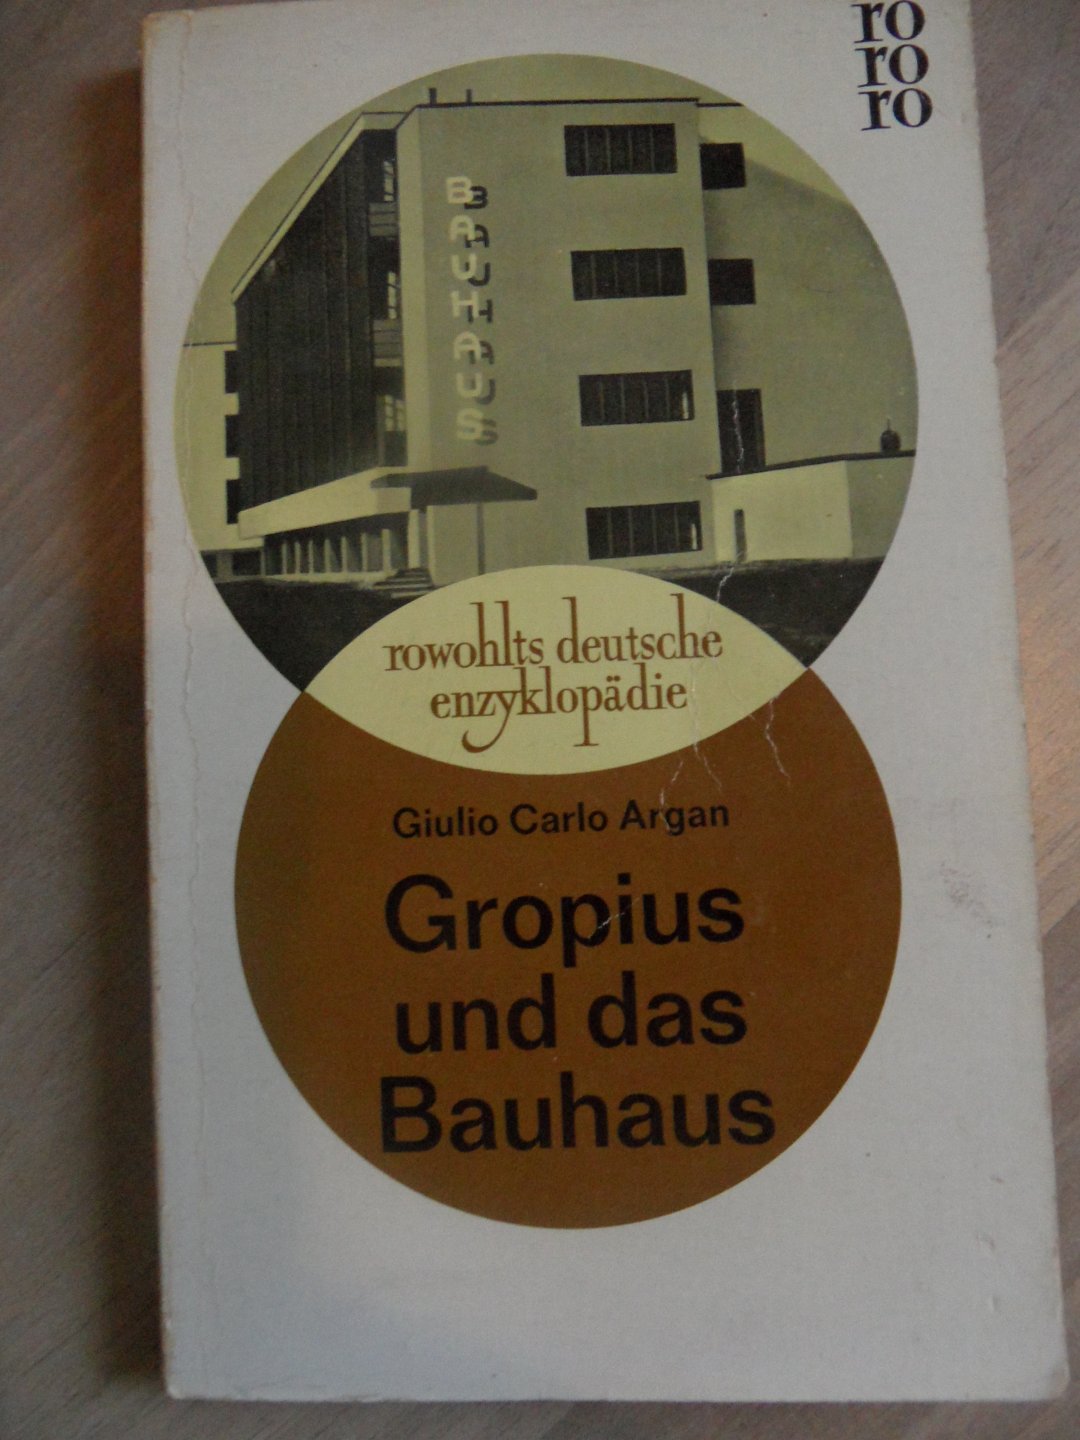 Argan, Giulio Carlo - Gropius und das Bauhaus